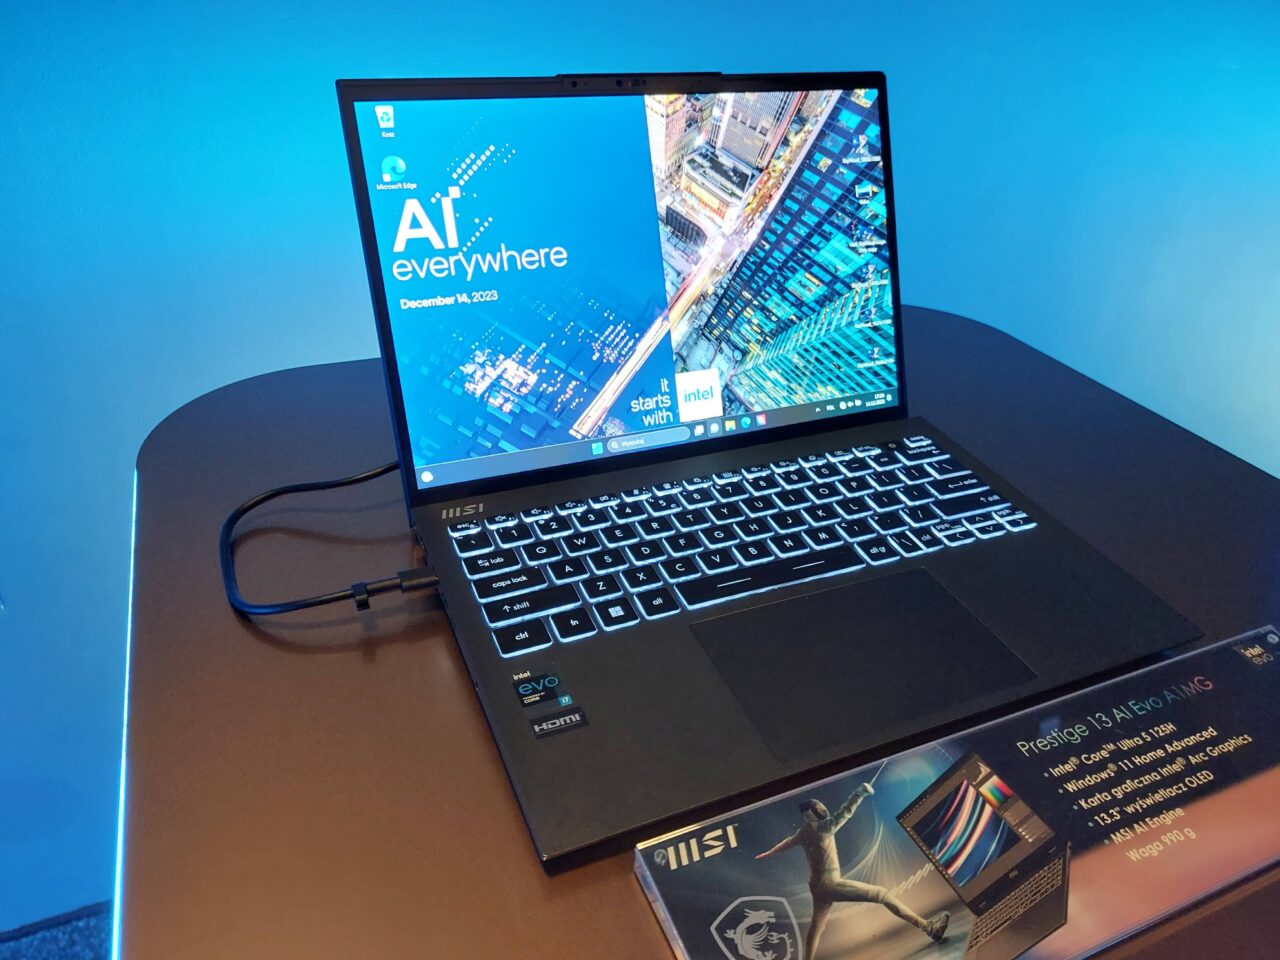 Laptop MSI Prestige 13 AI Evo A1MG z otwartą klapą na stole, wyświetlający tapetę z napisem "AI everywhere" oraz datą 14 grudnia 2023, w tle niebieskie oświetlenie.